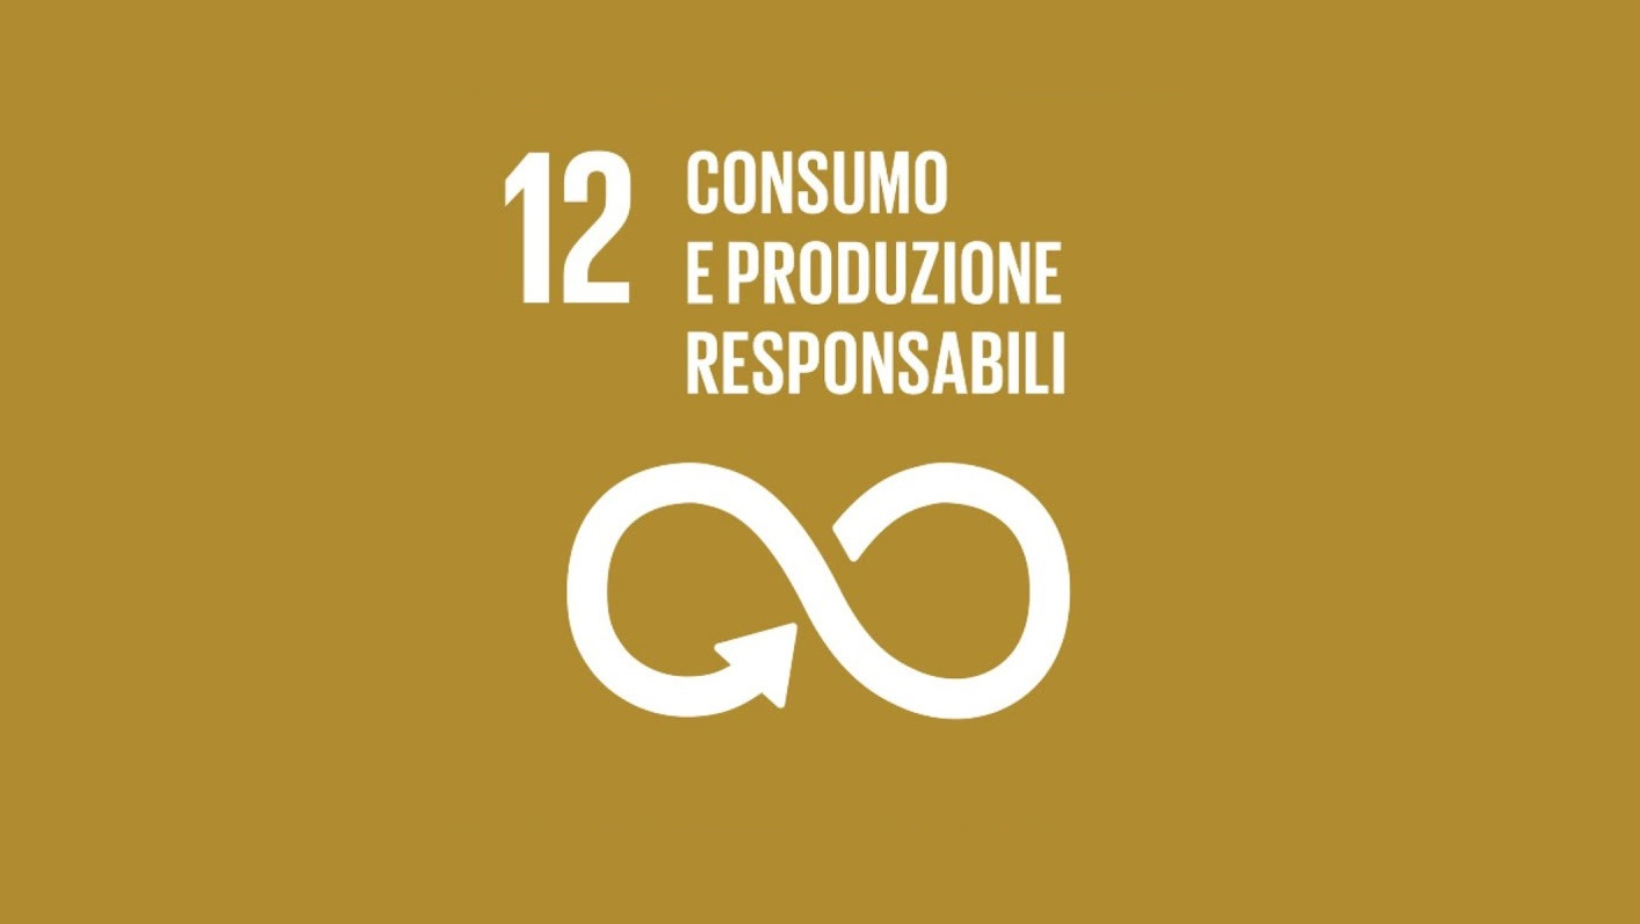 Obiettivo 12: Consumo e produzione responsabili